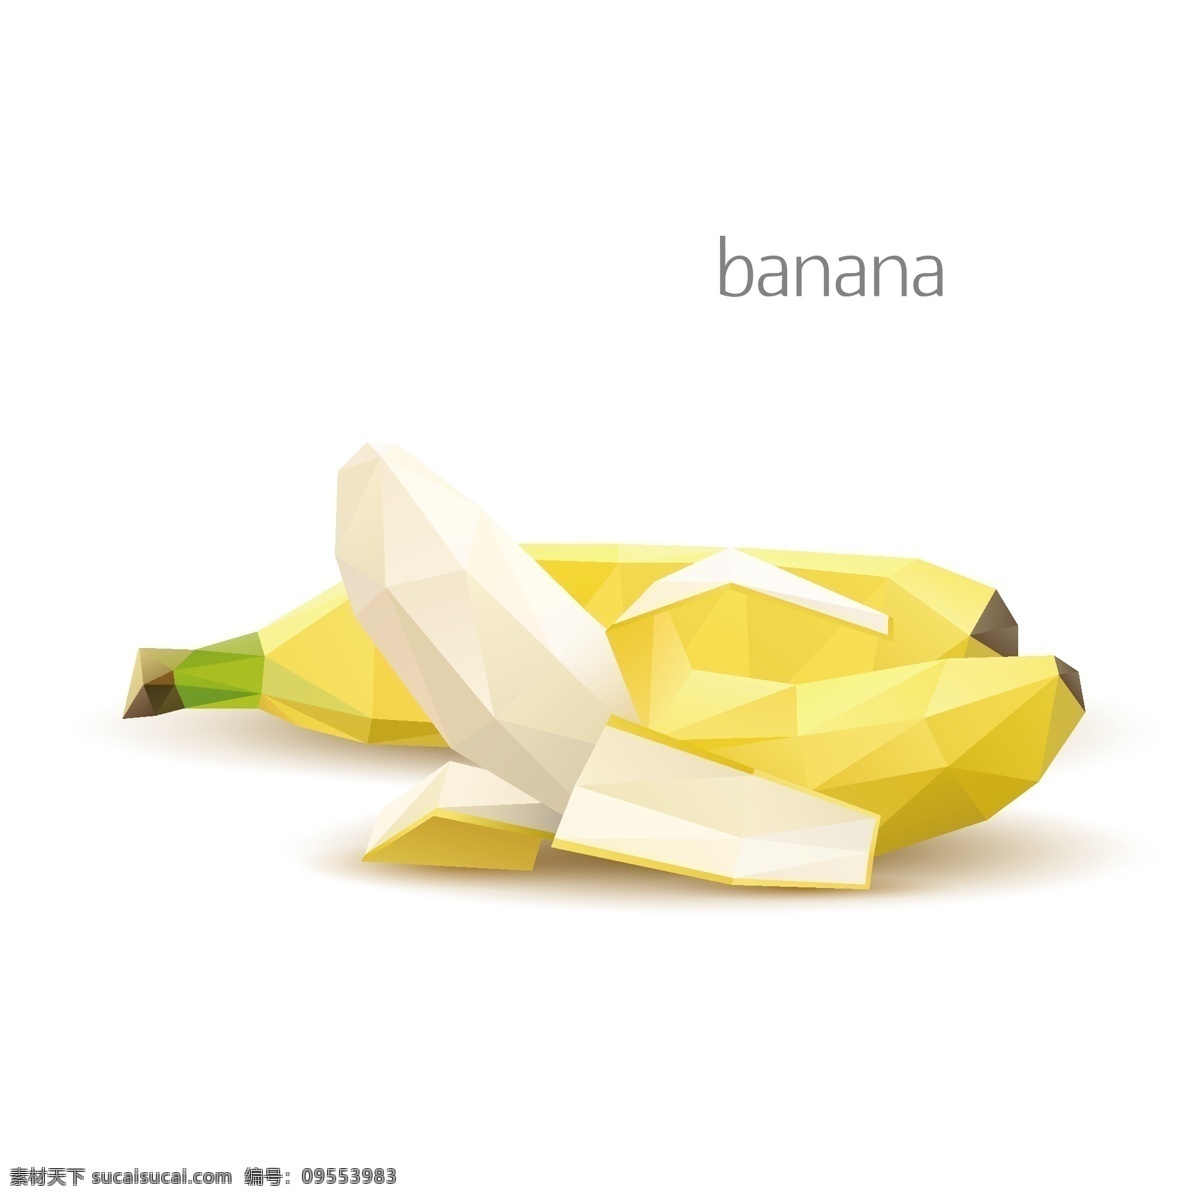 马赛克水果 水果 香蕉 像素化 几何图案 创意设计 马赛克背景 三角形 多边形 不规则图案 卡通背景 抽象背景 生物世界 矢量